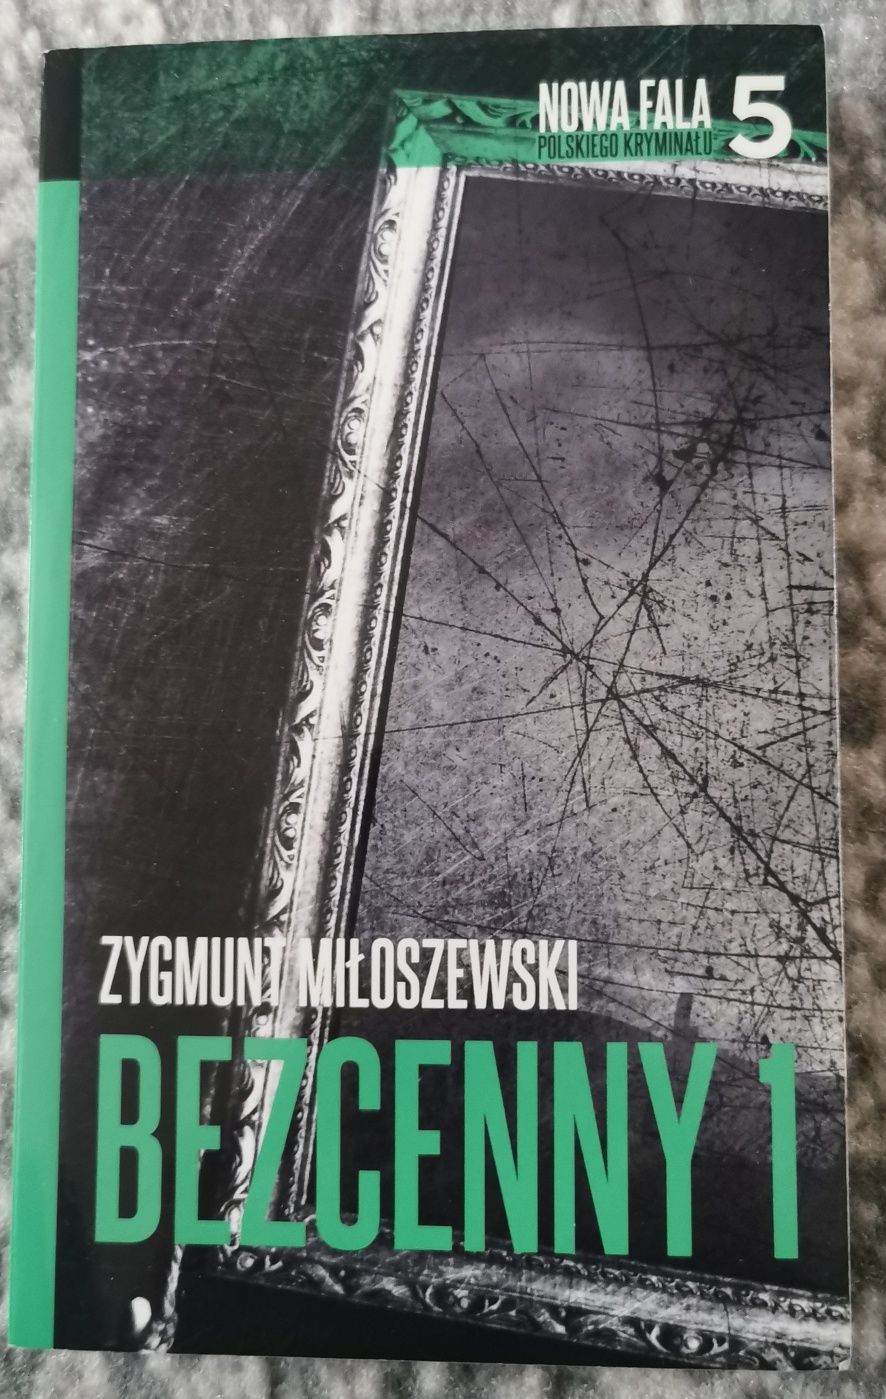 Książka "Bezcenny 1" Zygmunt Miłoszewskii